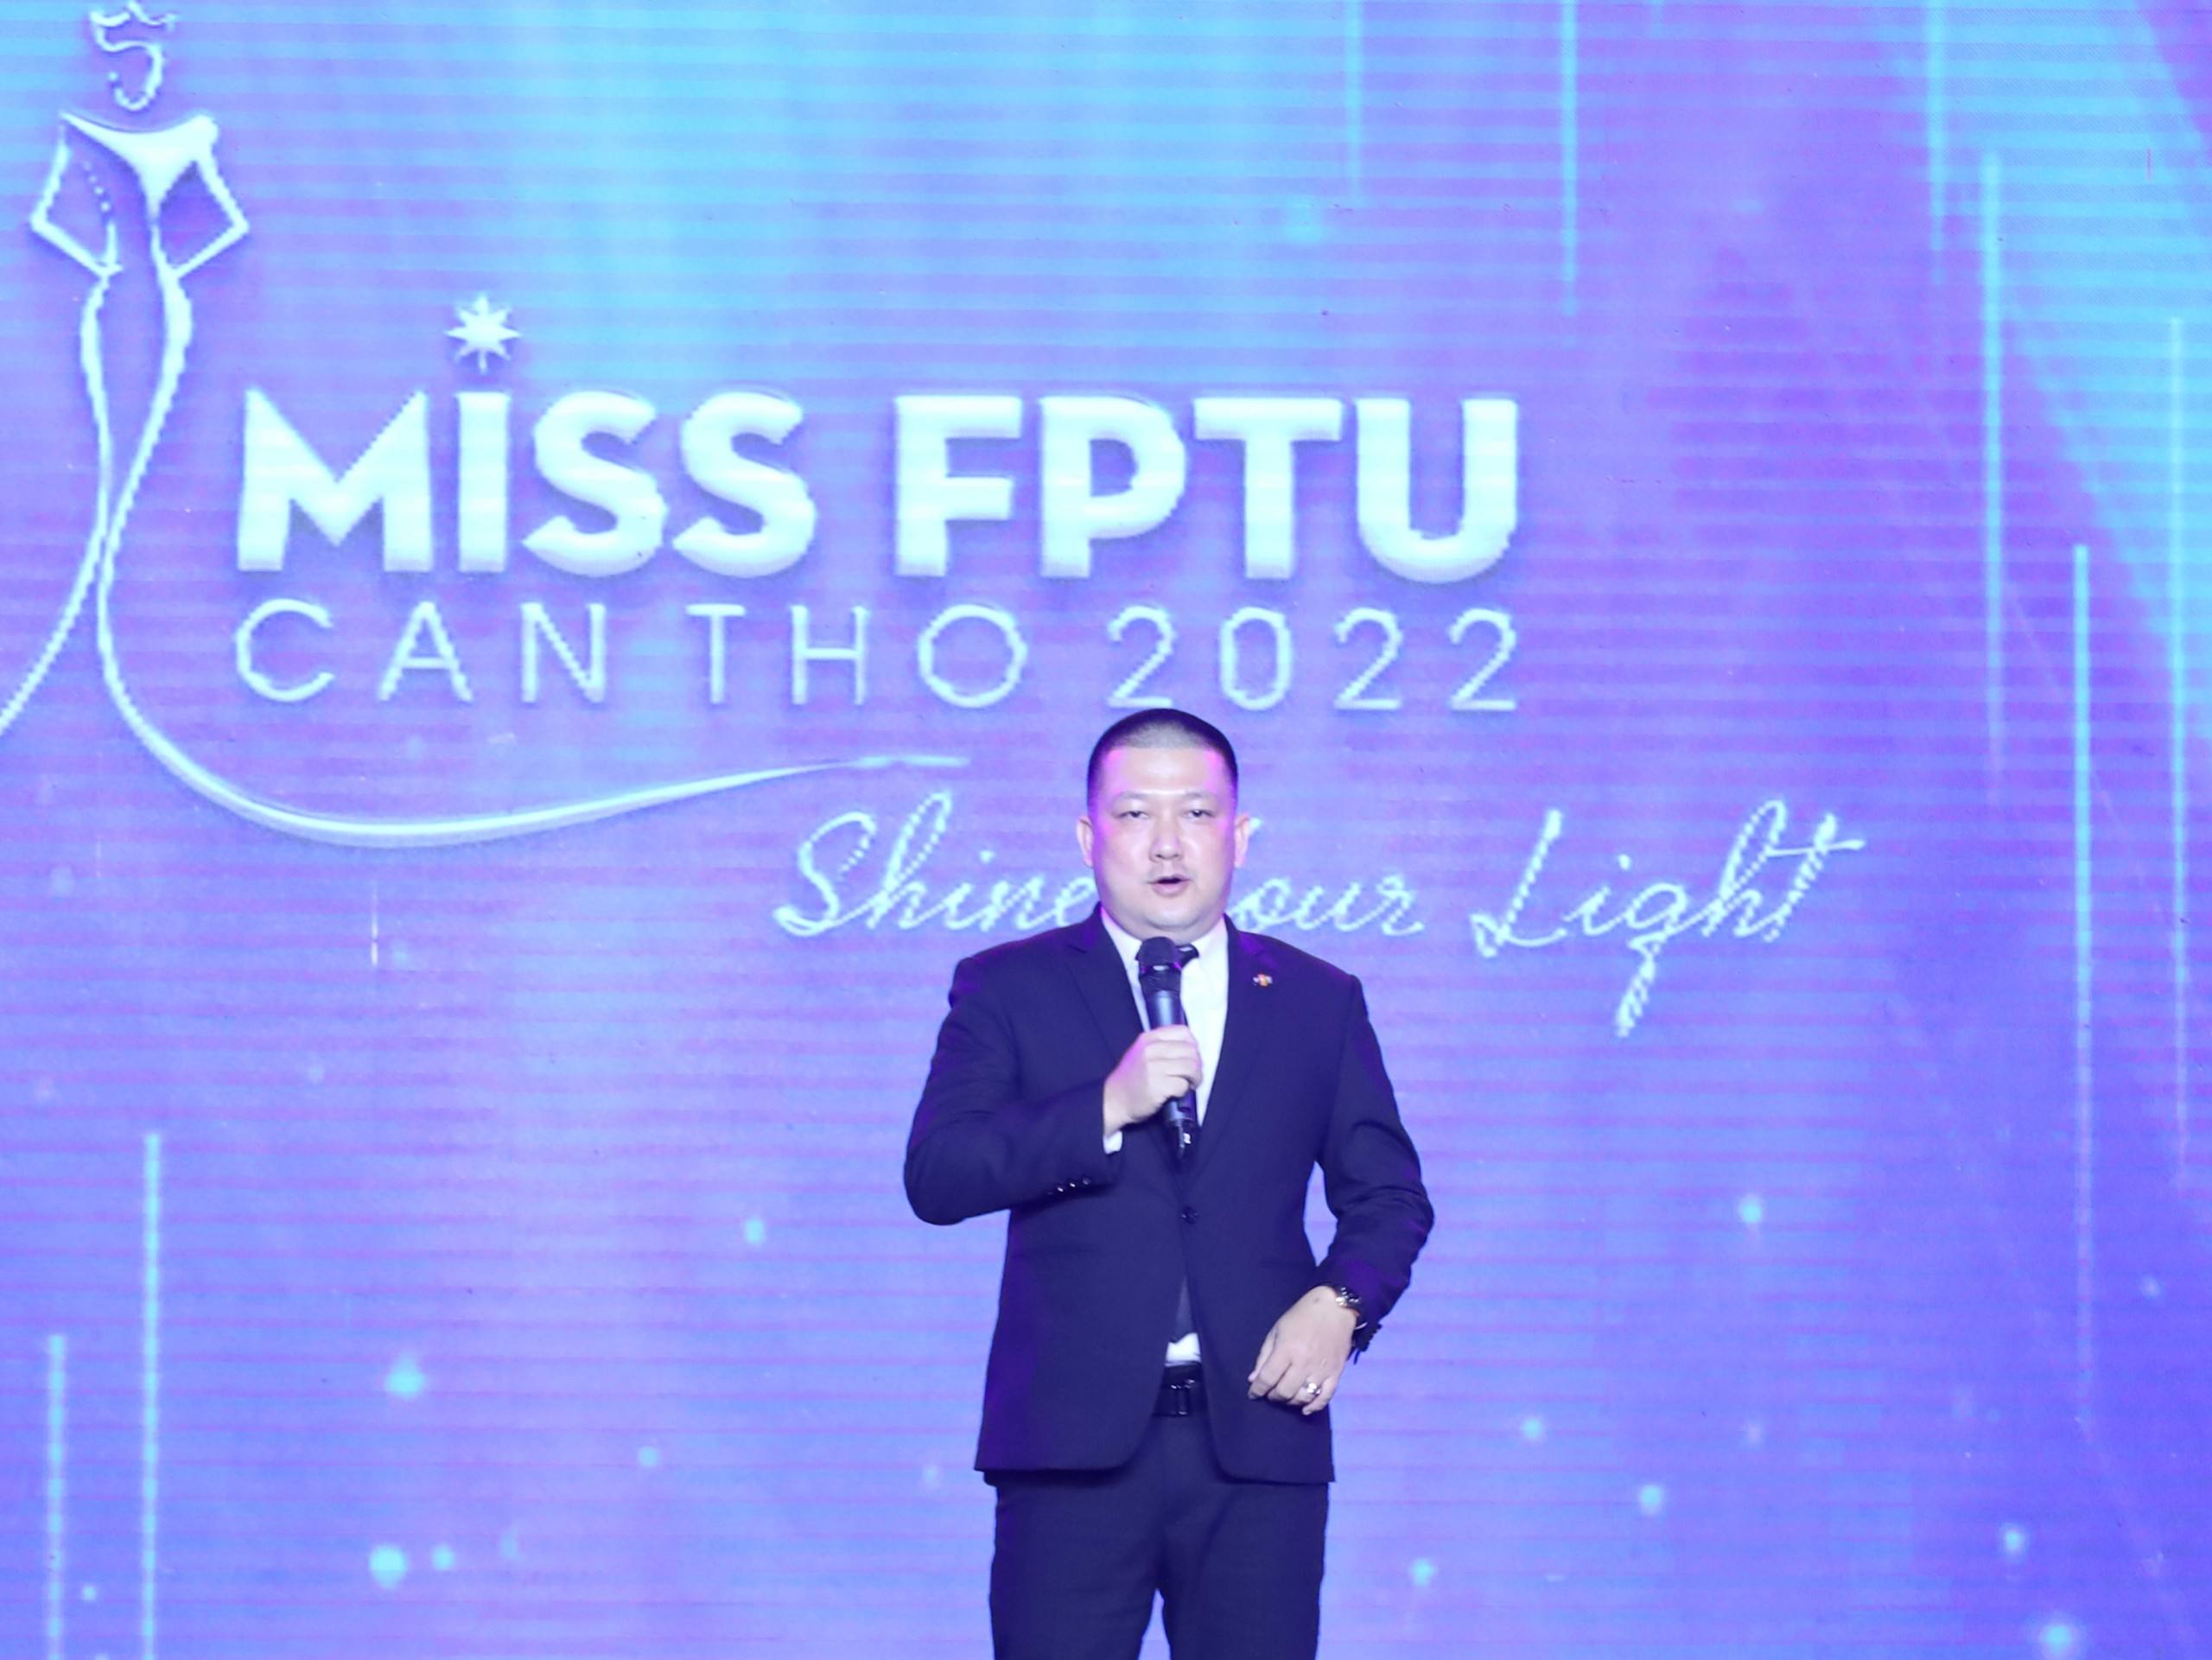 Ông Trần Thanh Danh - Trưởng Ban Tuyển sinh và CTSV ĐH FPT Cần Thơ, Trưởng ban tổ chức cuộc thi phát biểu tại cuộc thi.